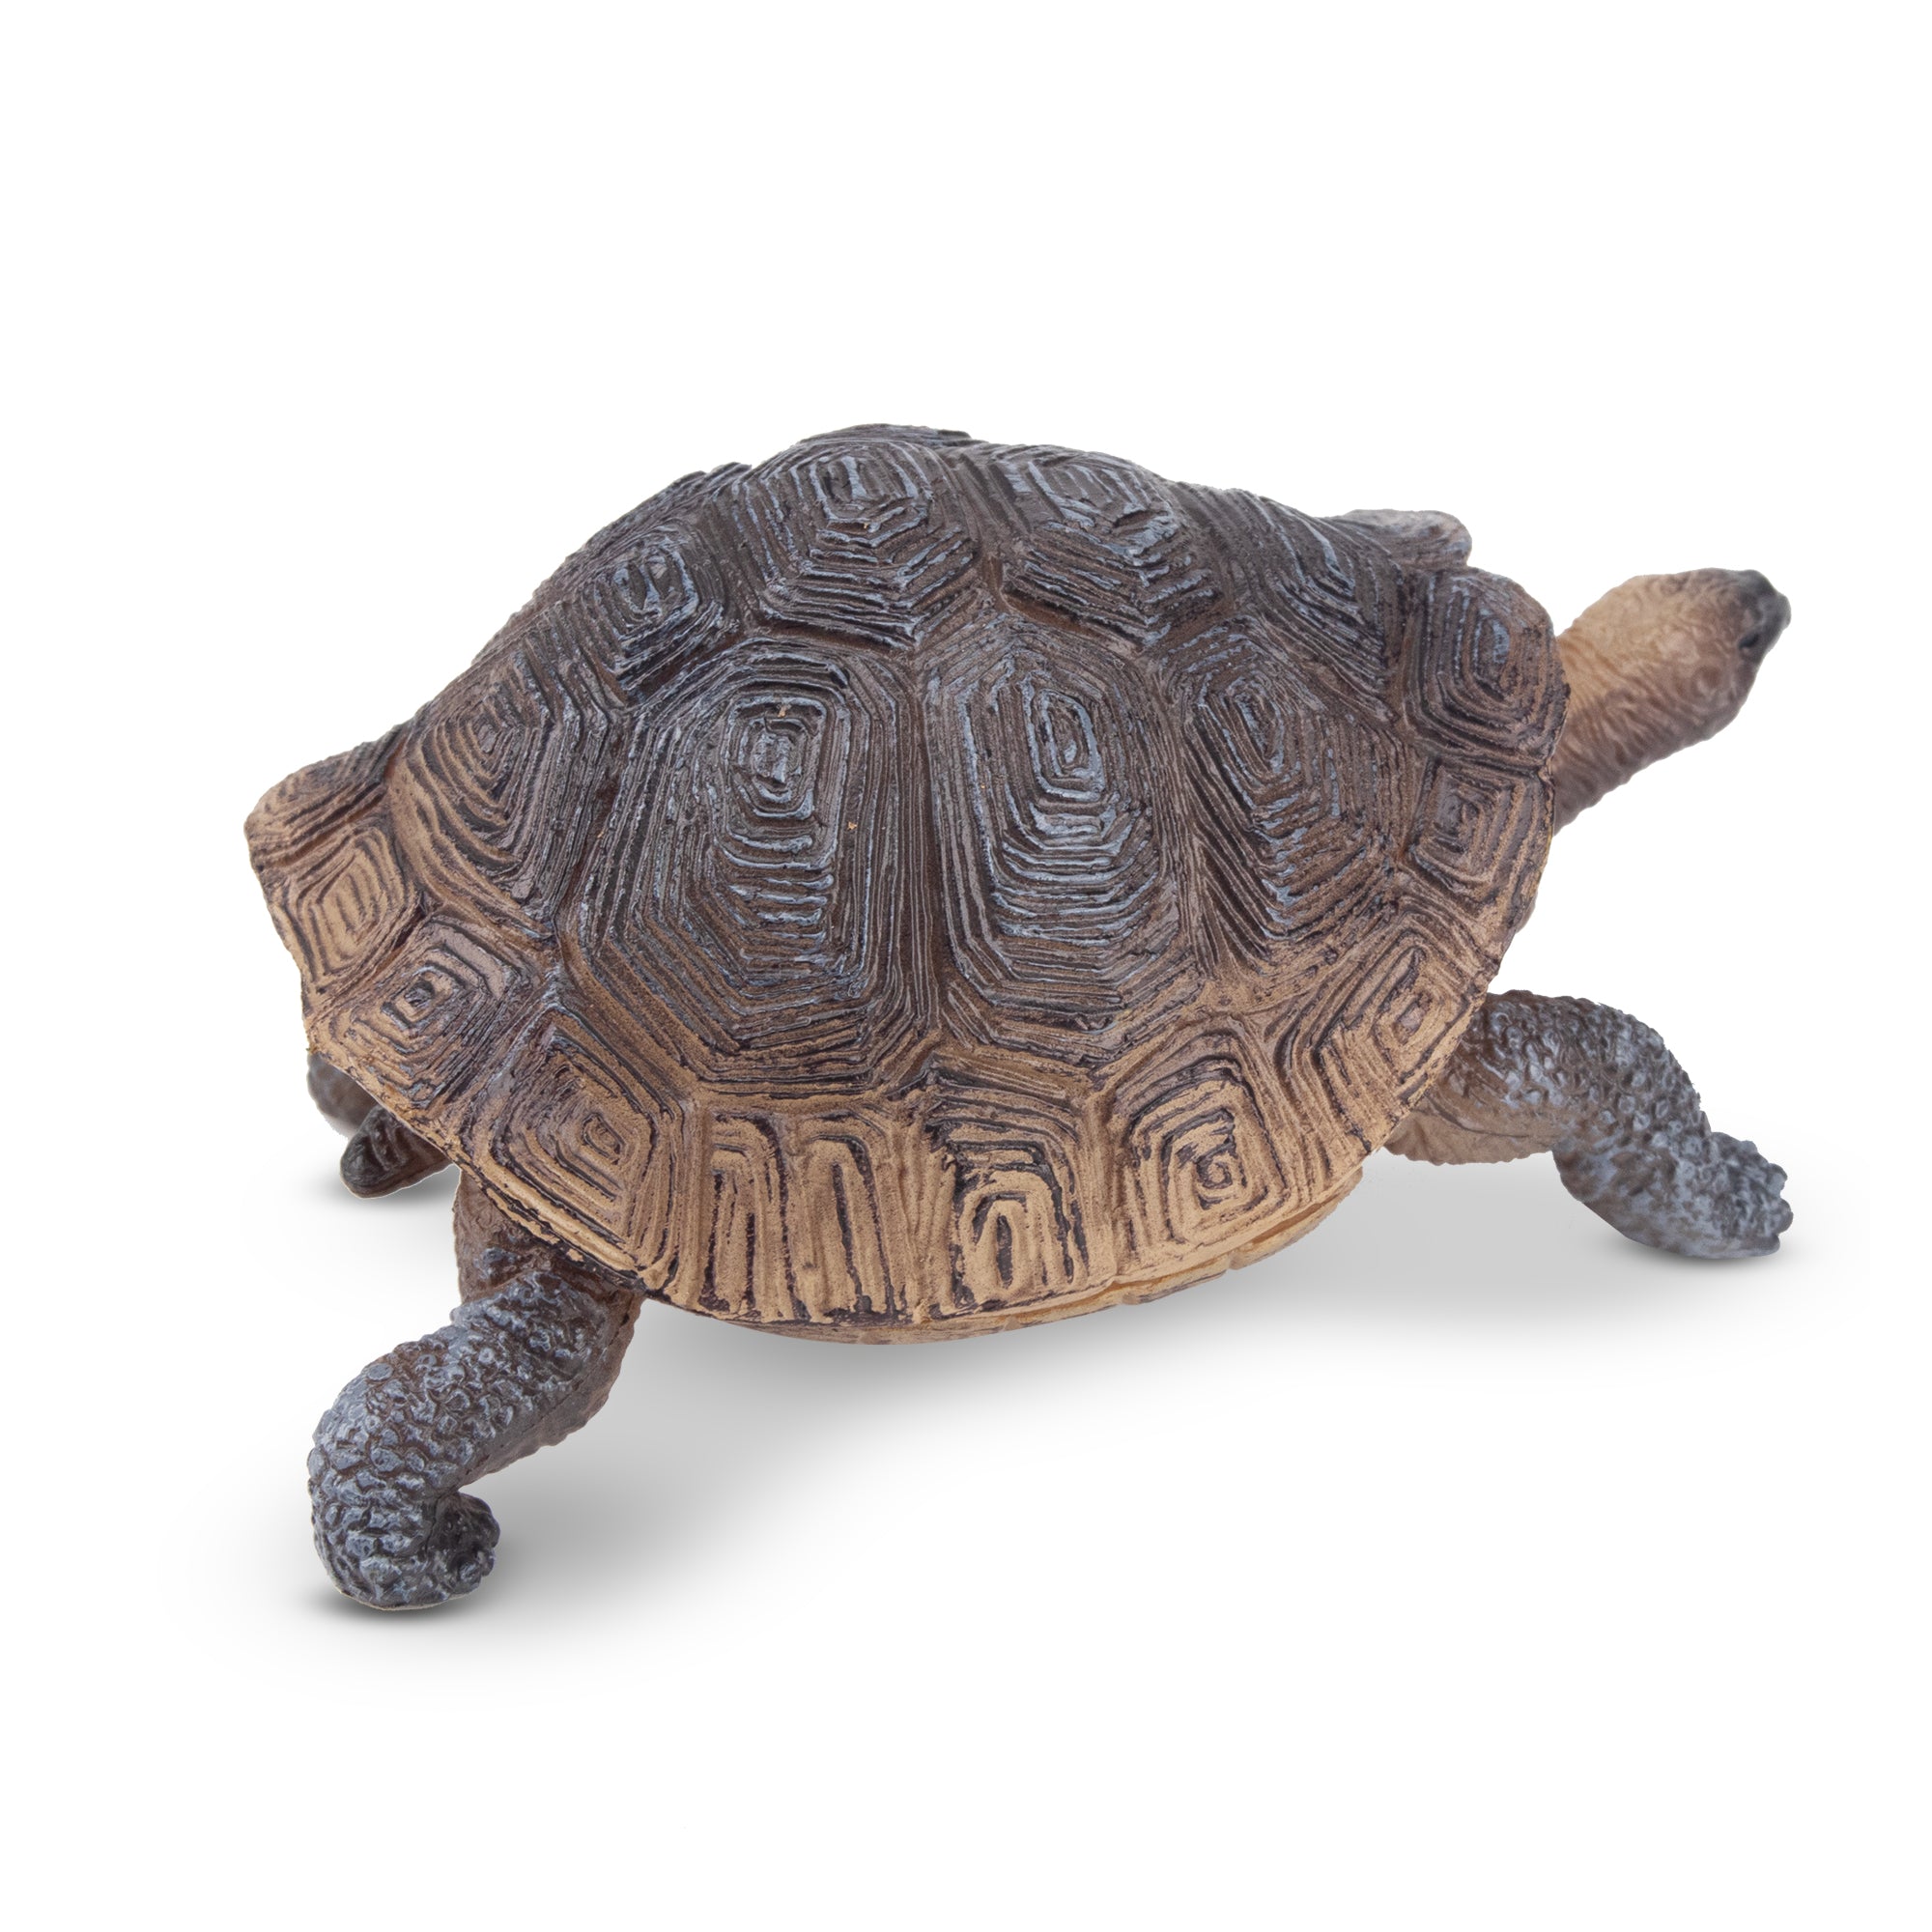 Toymany Galapagos Tortoise Figurine Toy-2